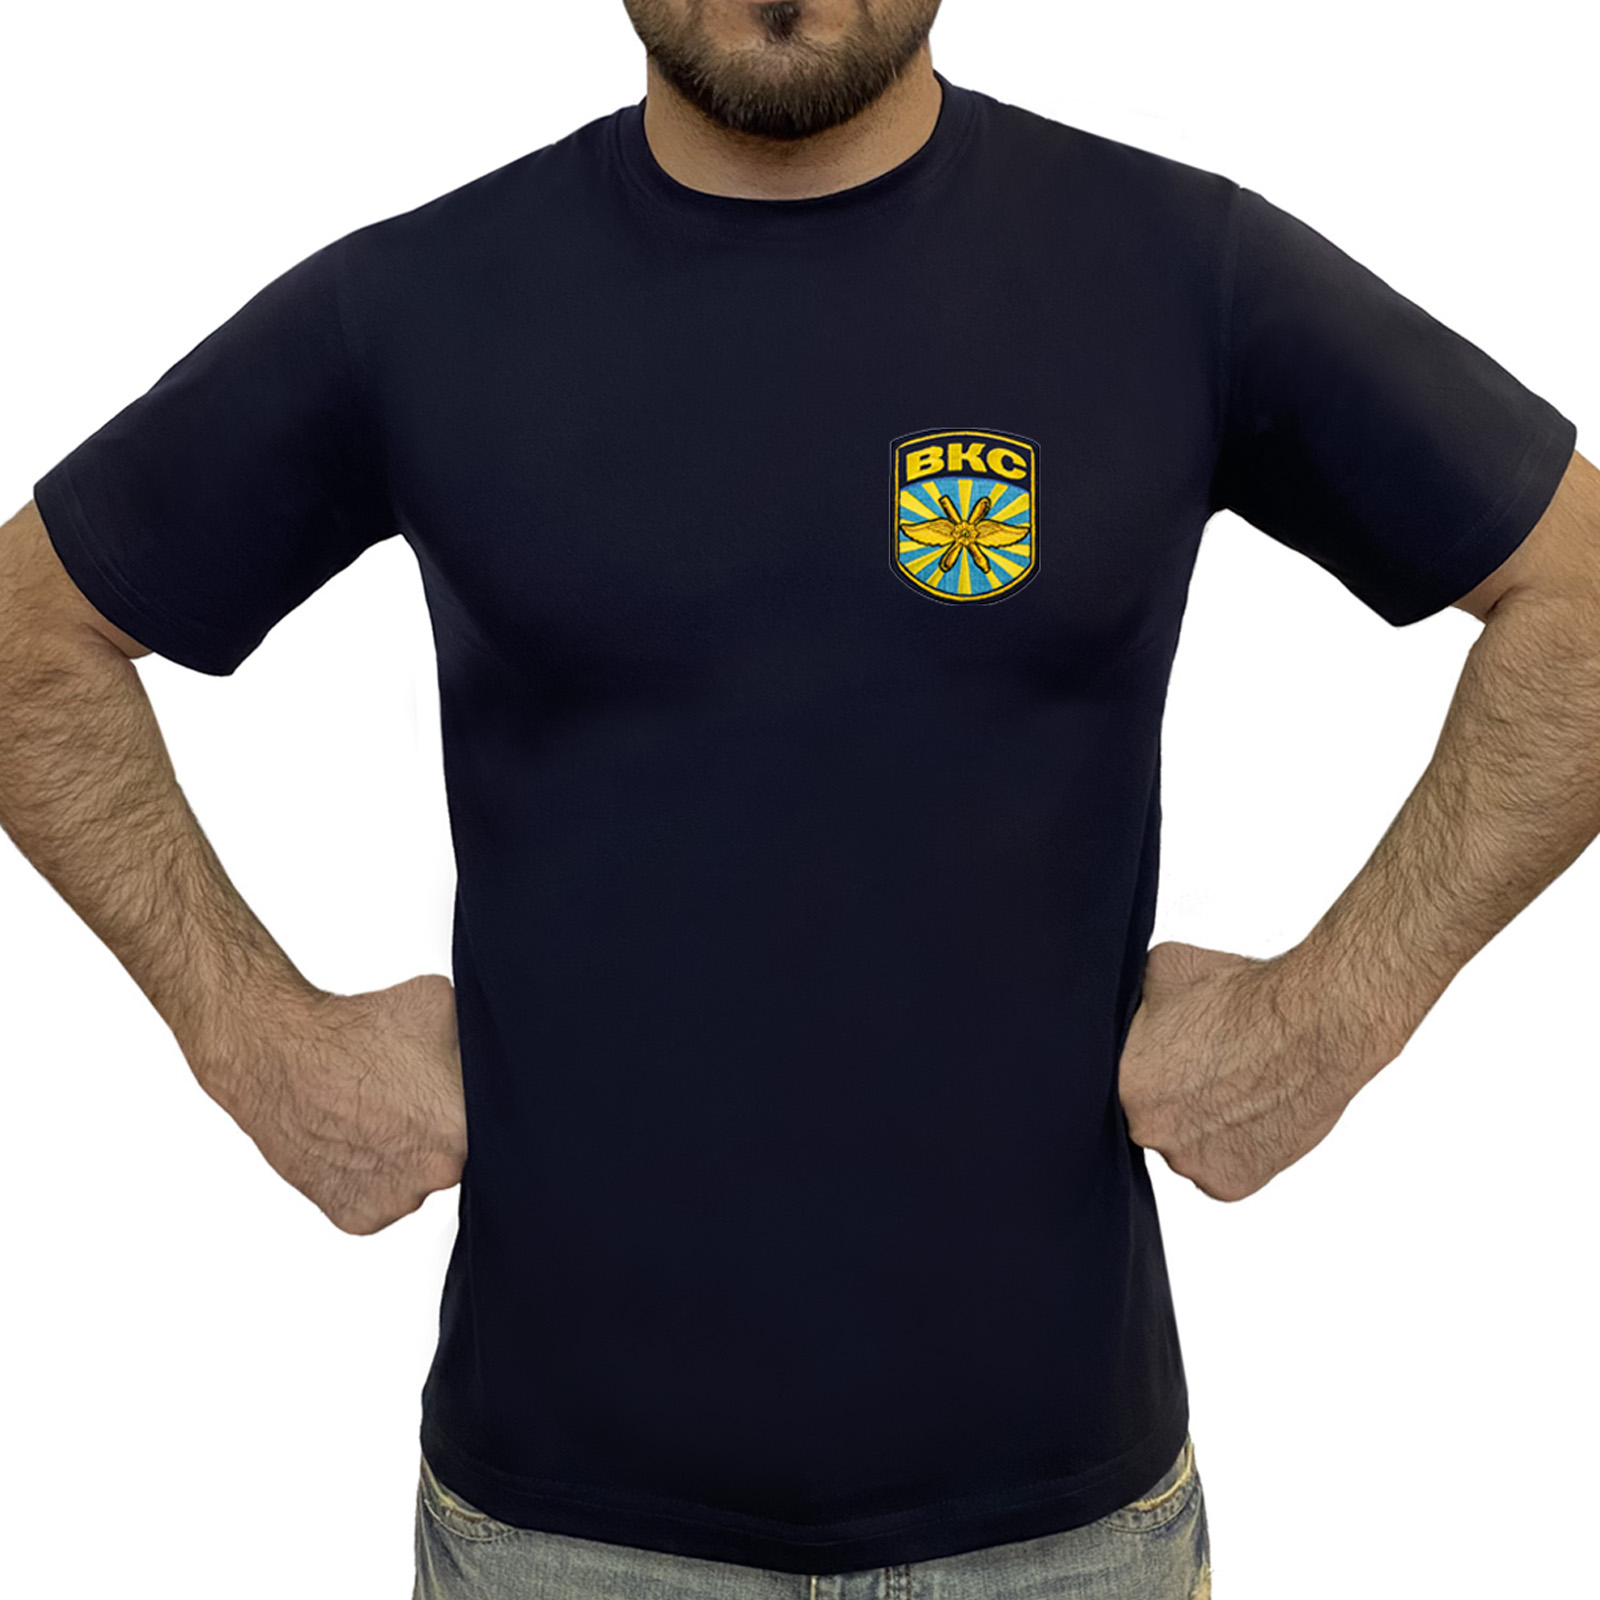 Купить мужскую футболку ВКС в интернет магазине